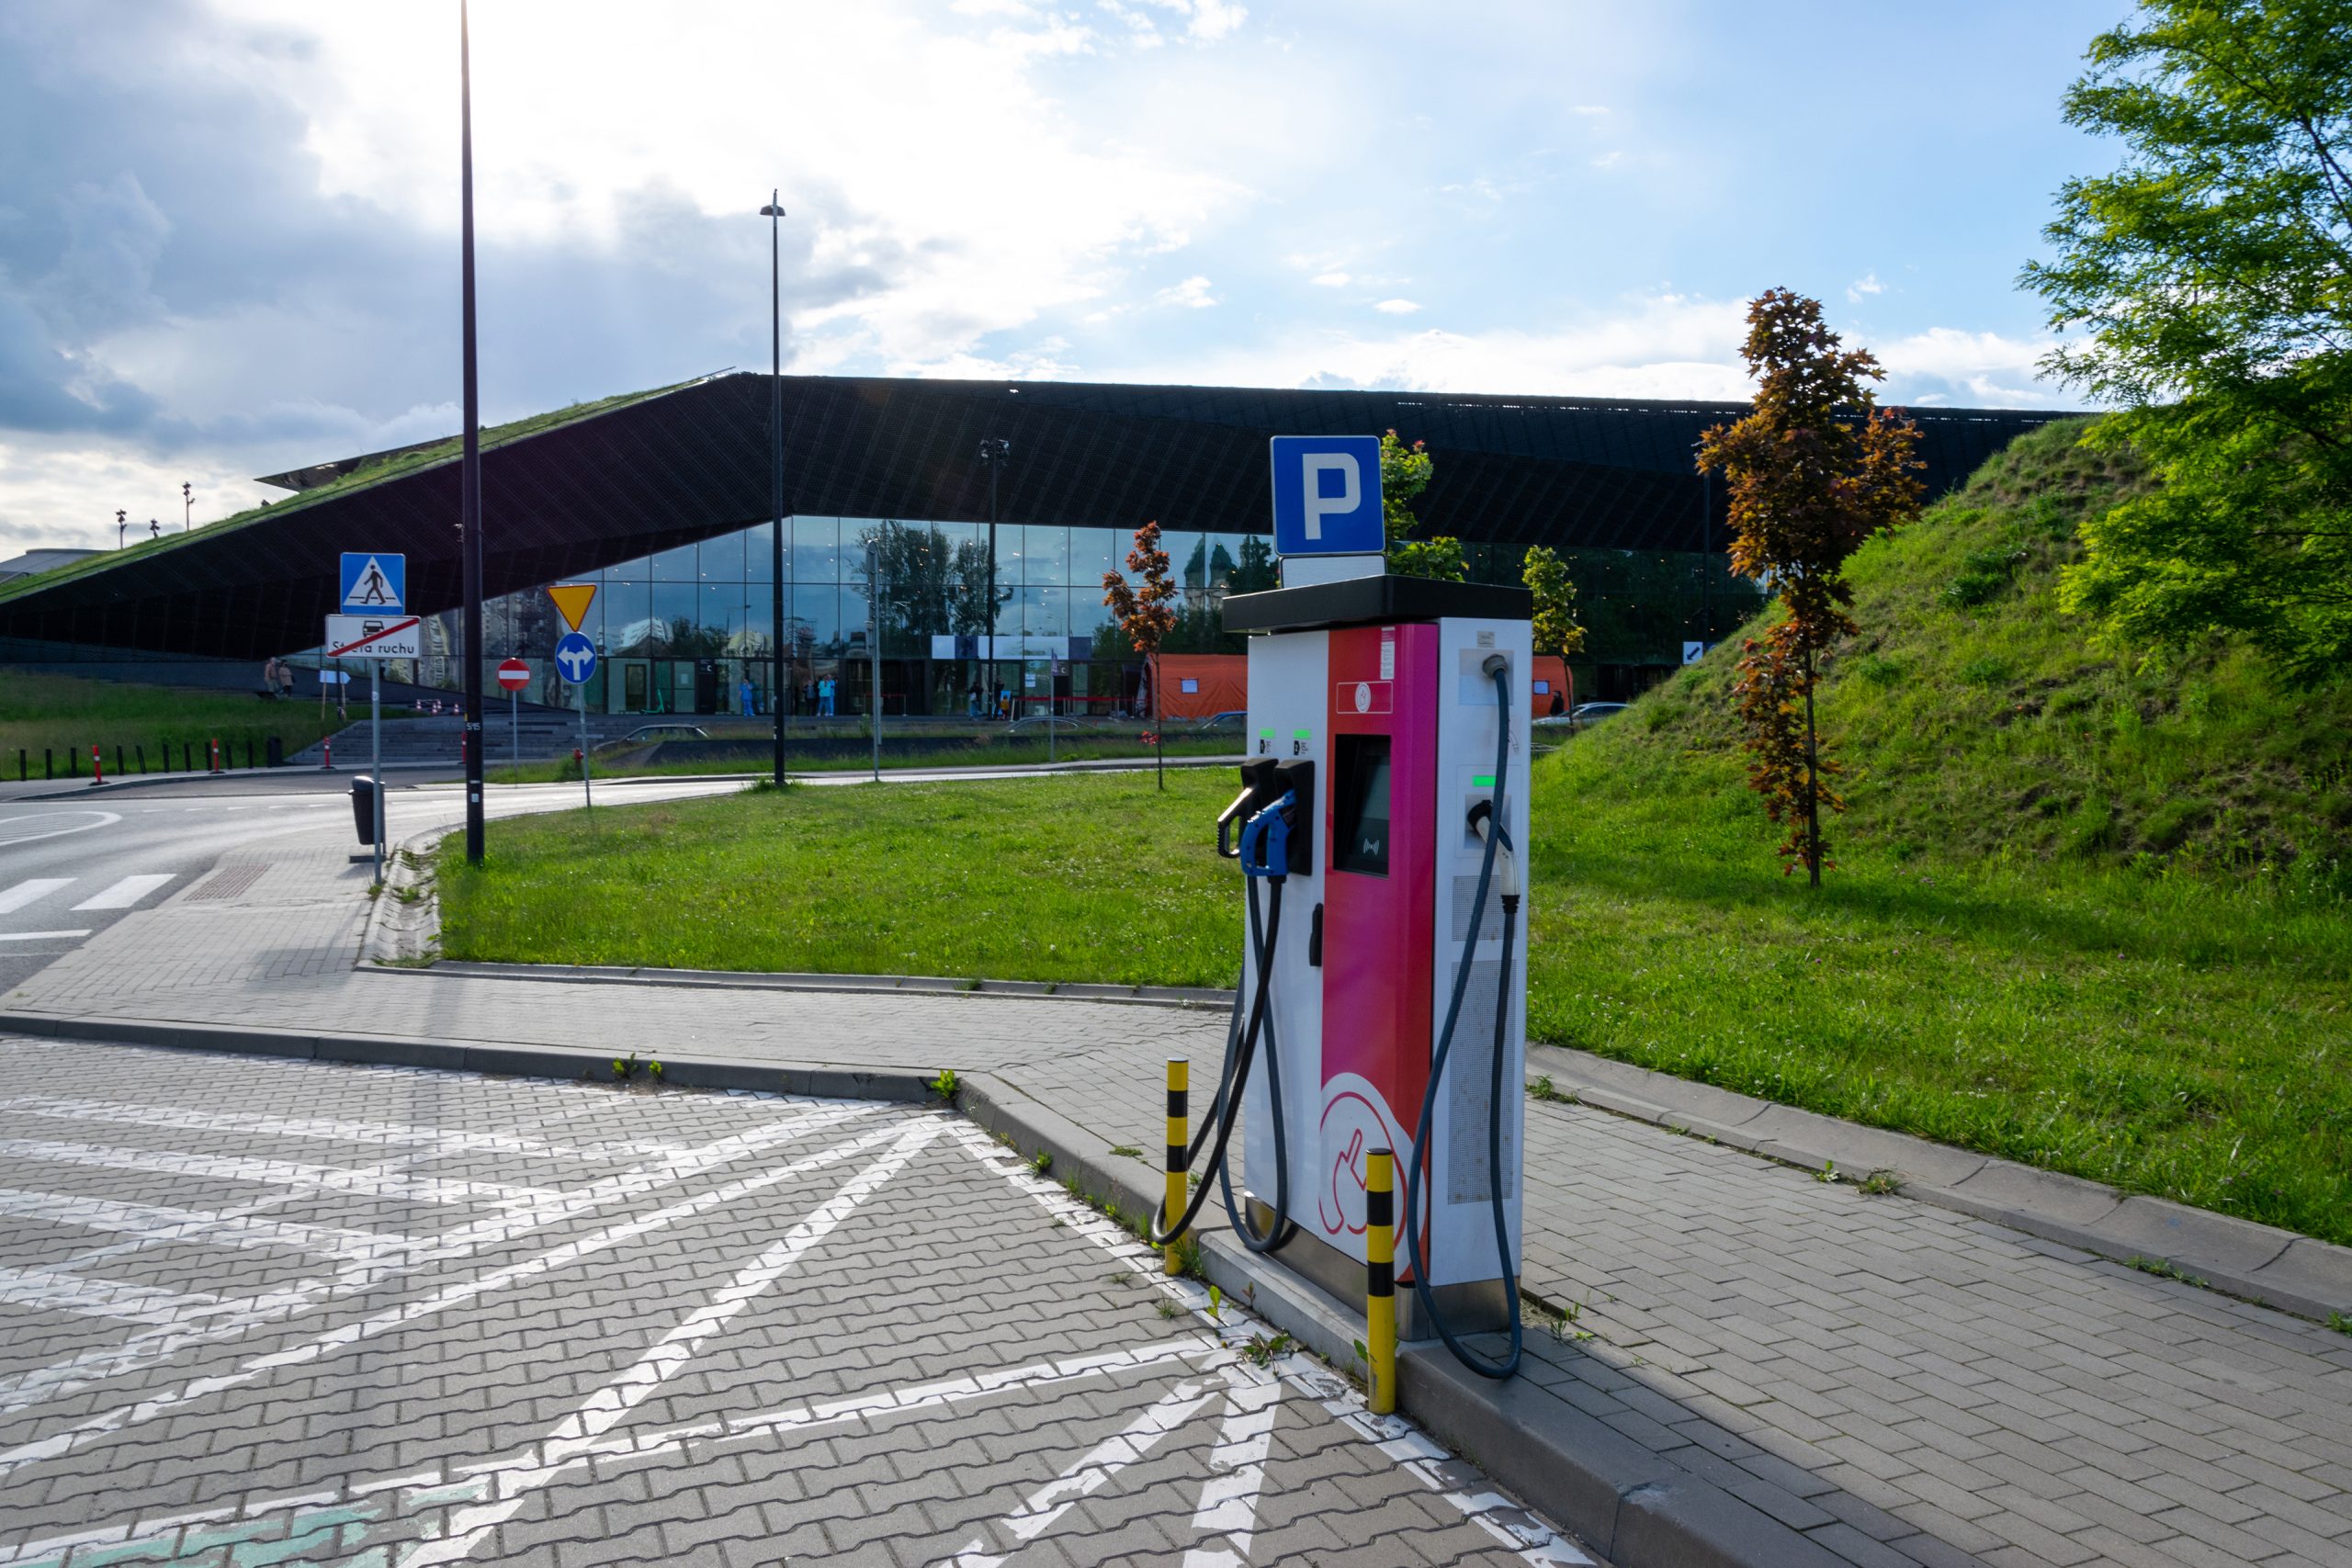 תחנת הדלק של העתיד - חשמלית לחלוטין. צילום: Bigstock, Mvelishchuk